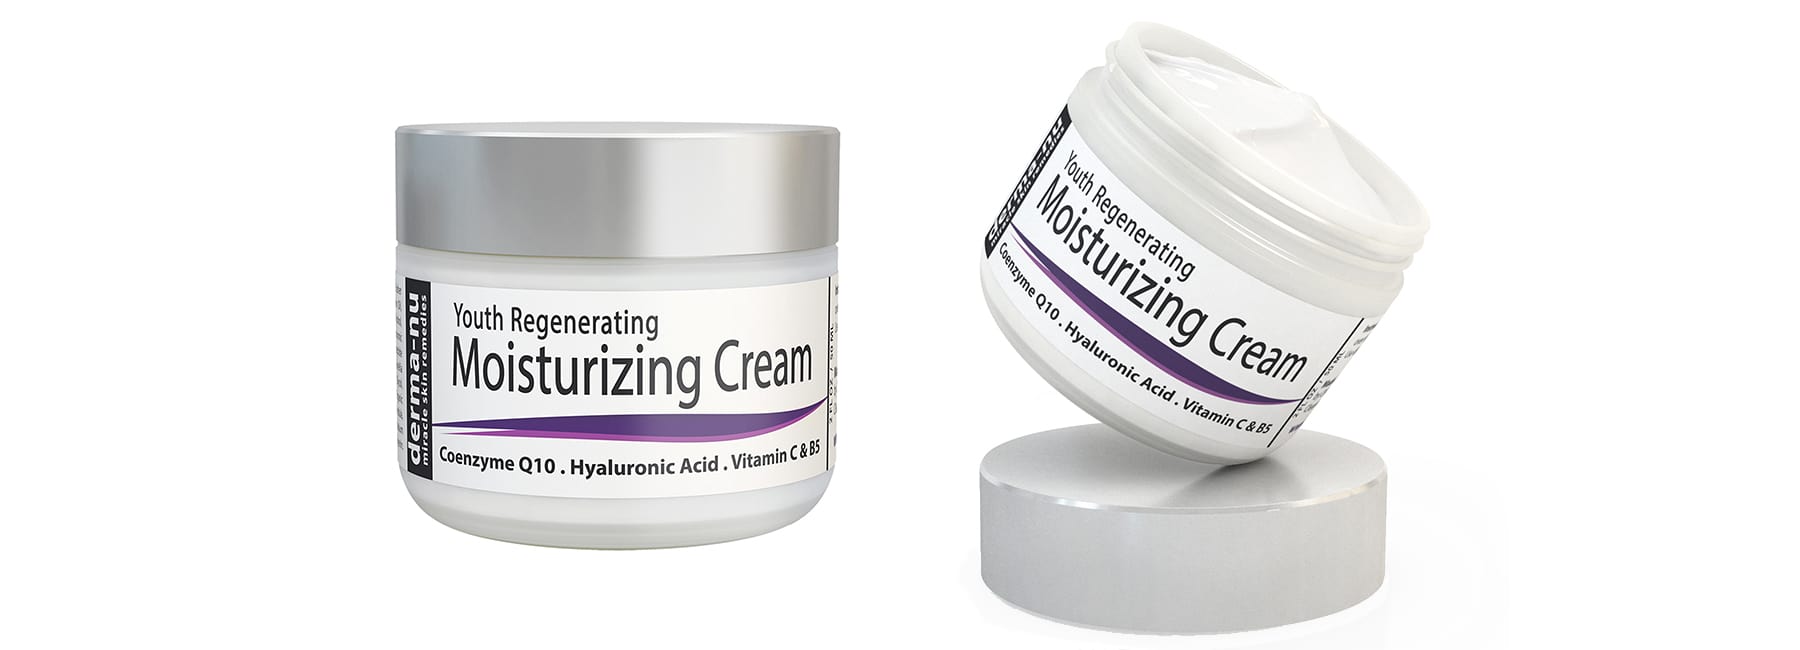 Youth Regenerating Moisturizing Cream